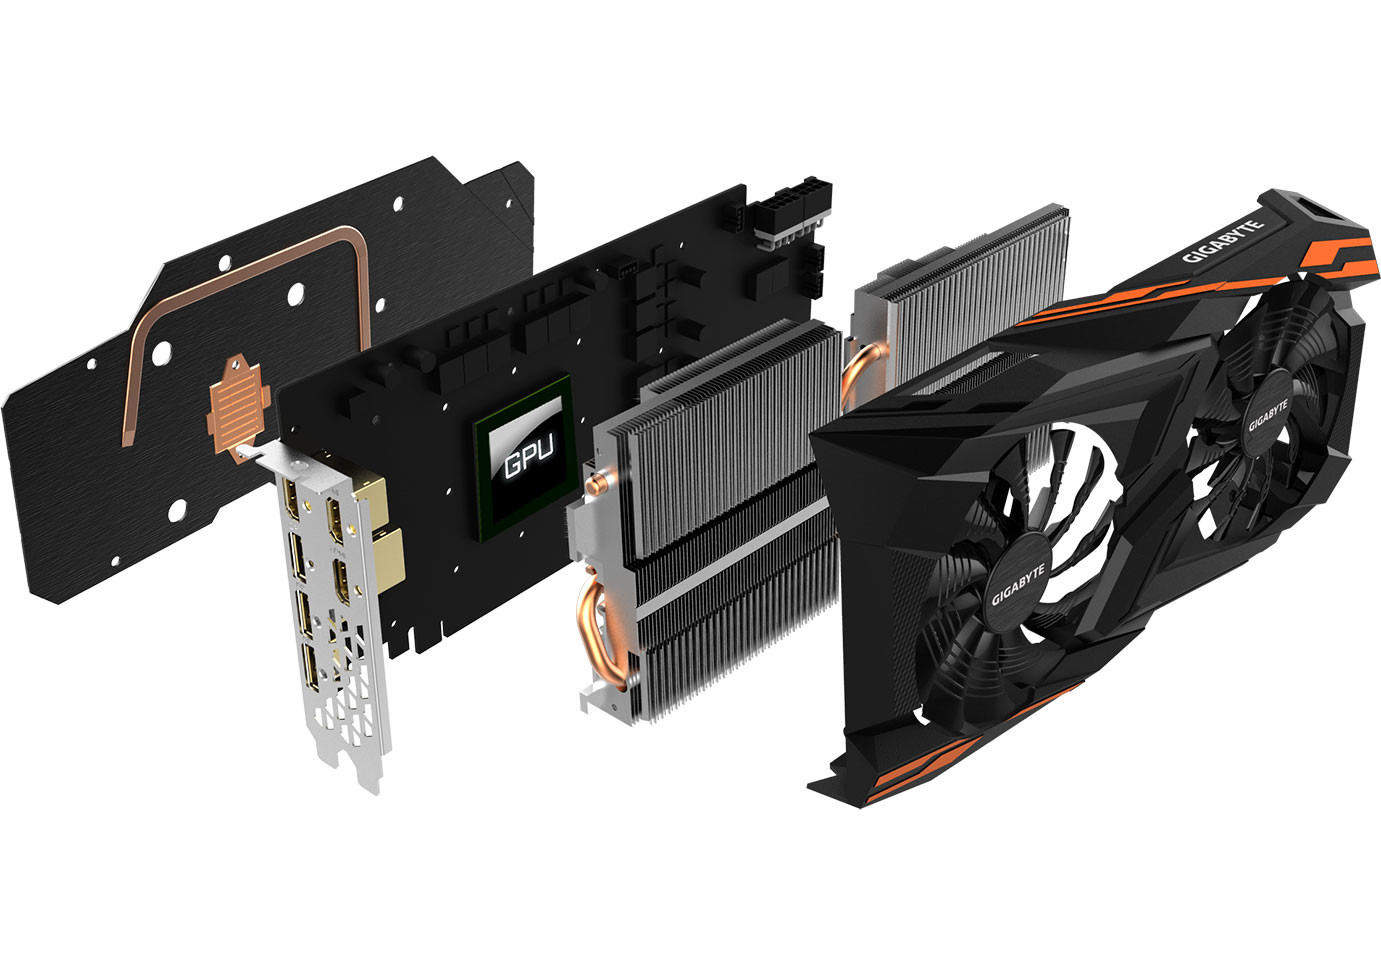 Immagine pubblicata in relazione al seguente contenuto: Foto e specifiche della GIGABYTE Radeon RX Vega 64 Gaming OC 8G WindForce 2X | Nome immagine: news27448_GIGABYTE-Radeon-RX-Vega-64-Gaming-OC-8G-WindForce-2X_3.jpg